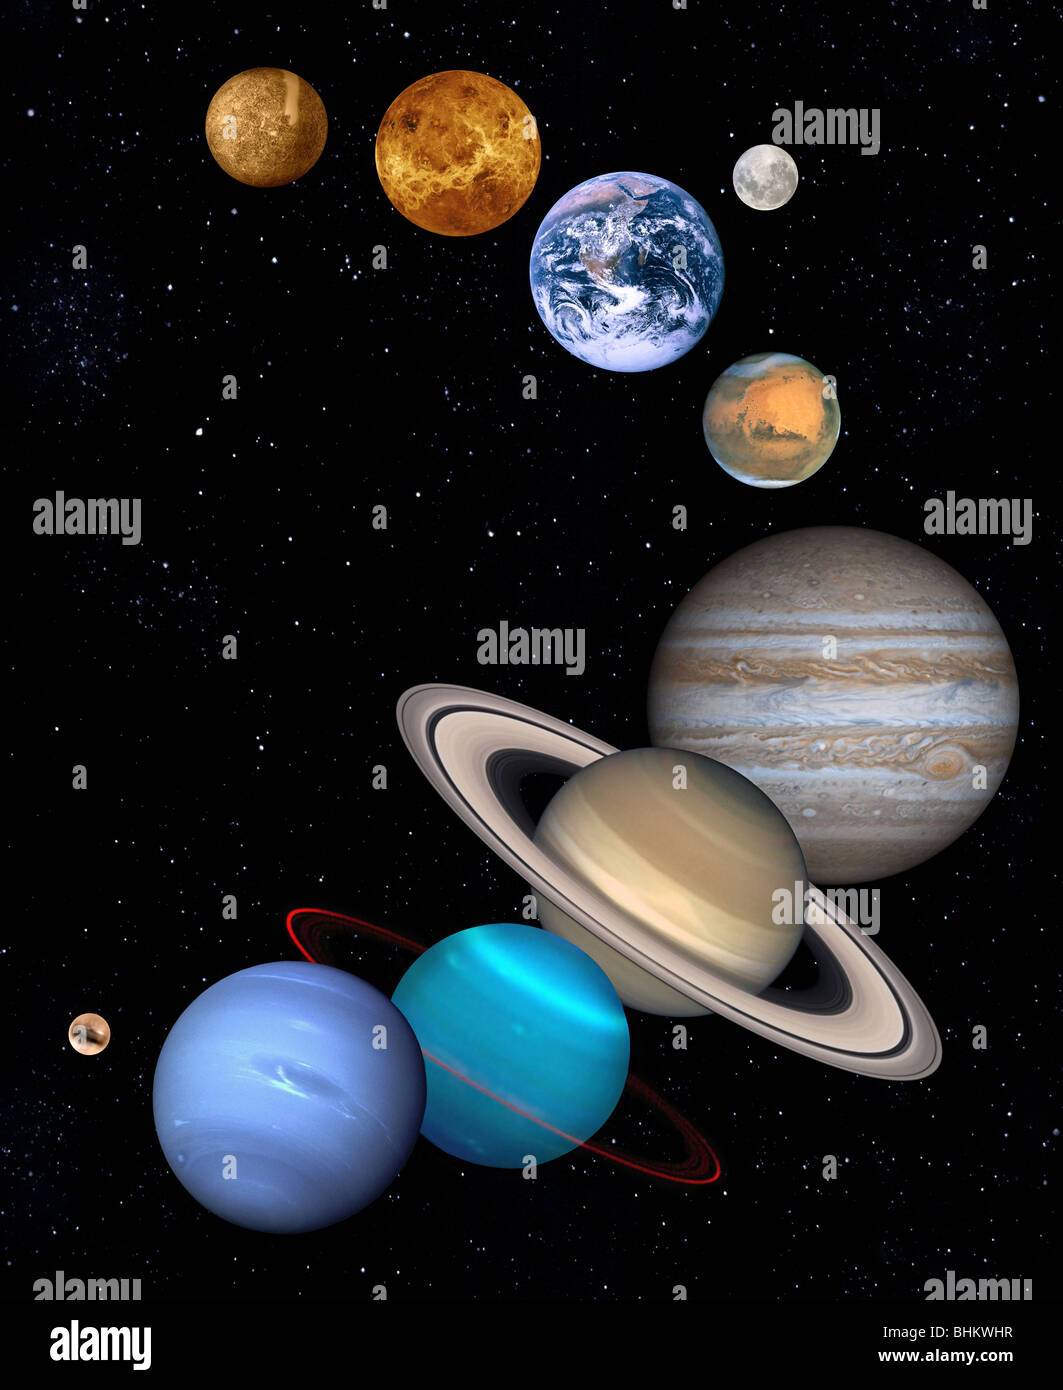 Les planètes de notre système solaire pas en taille relative de l'autre. Toutes les planètes sont des images optiques de la NASA. Banque D'Images